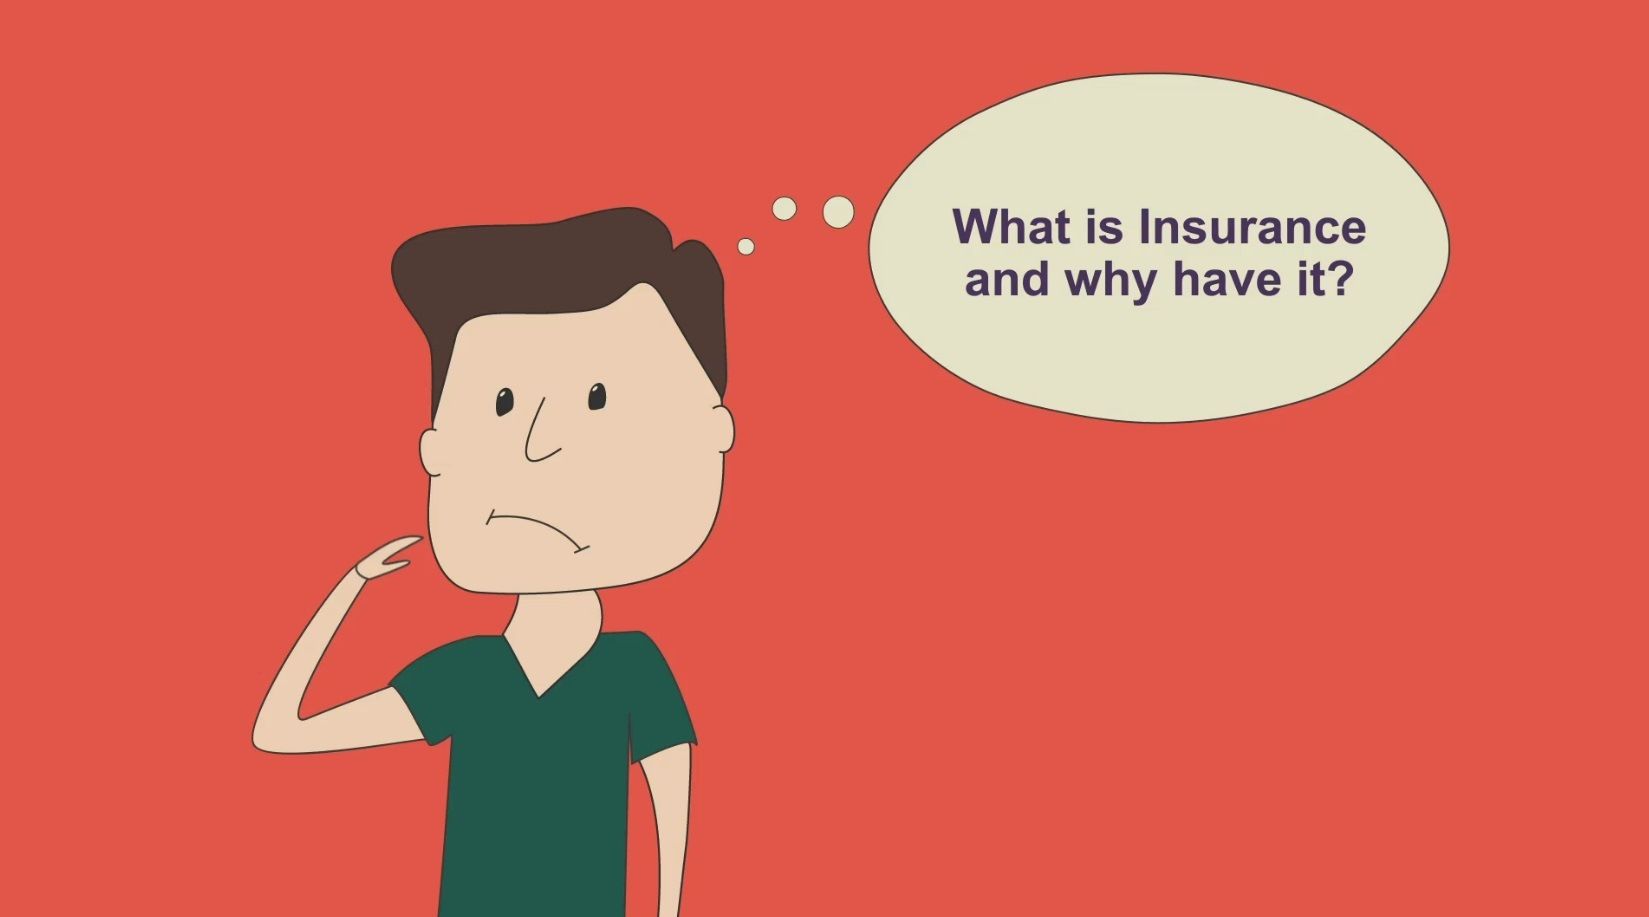 L’assicurazione di cartone - Cartoon insurance